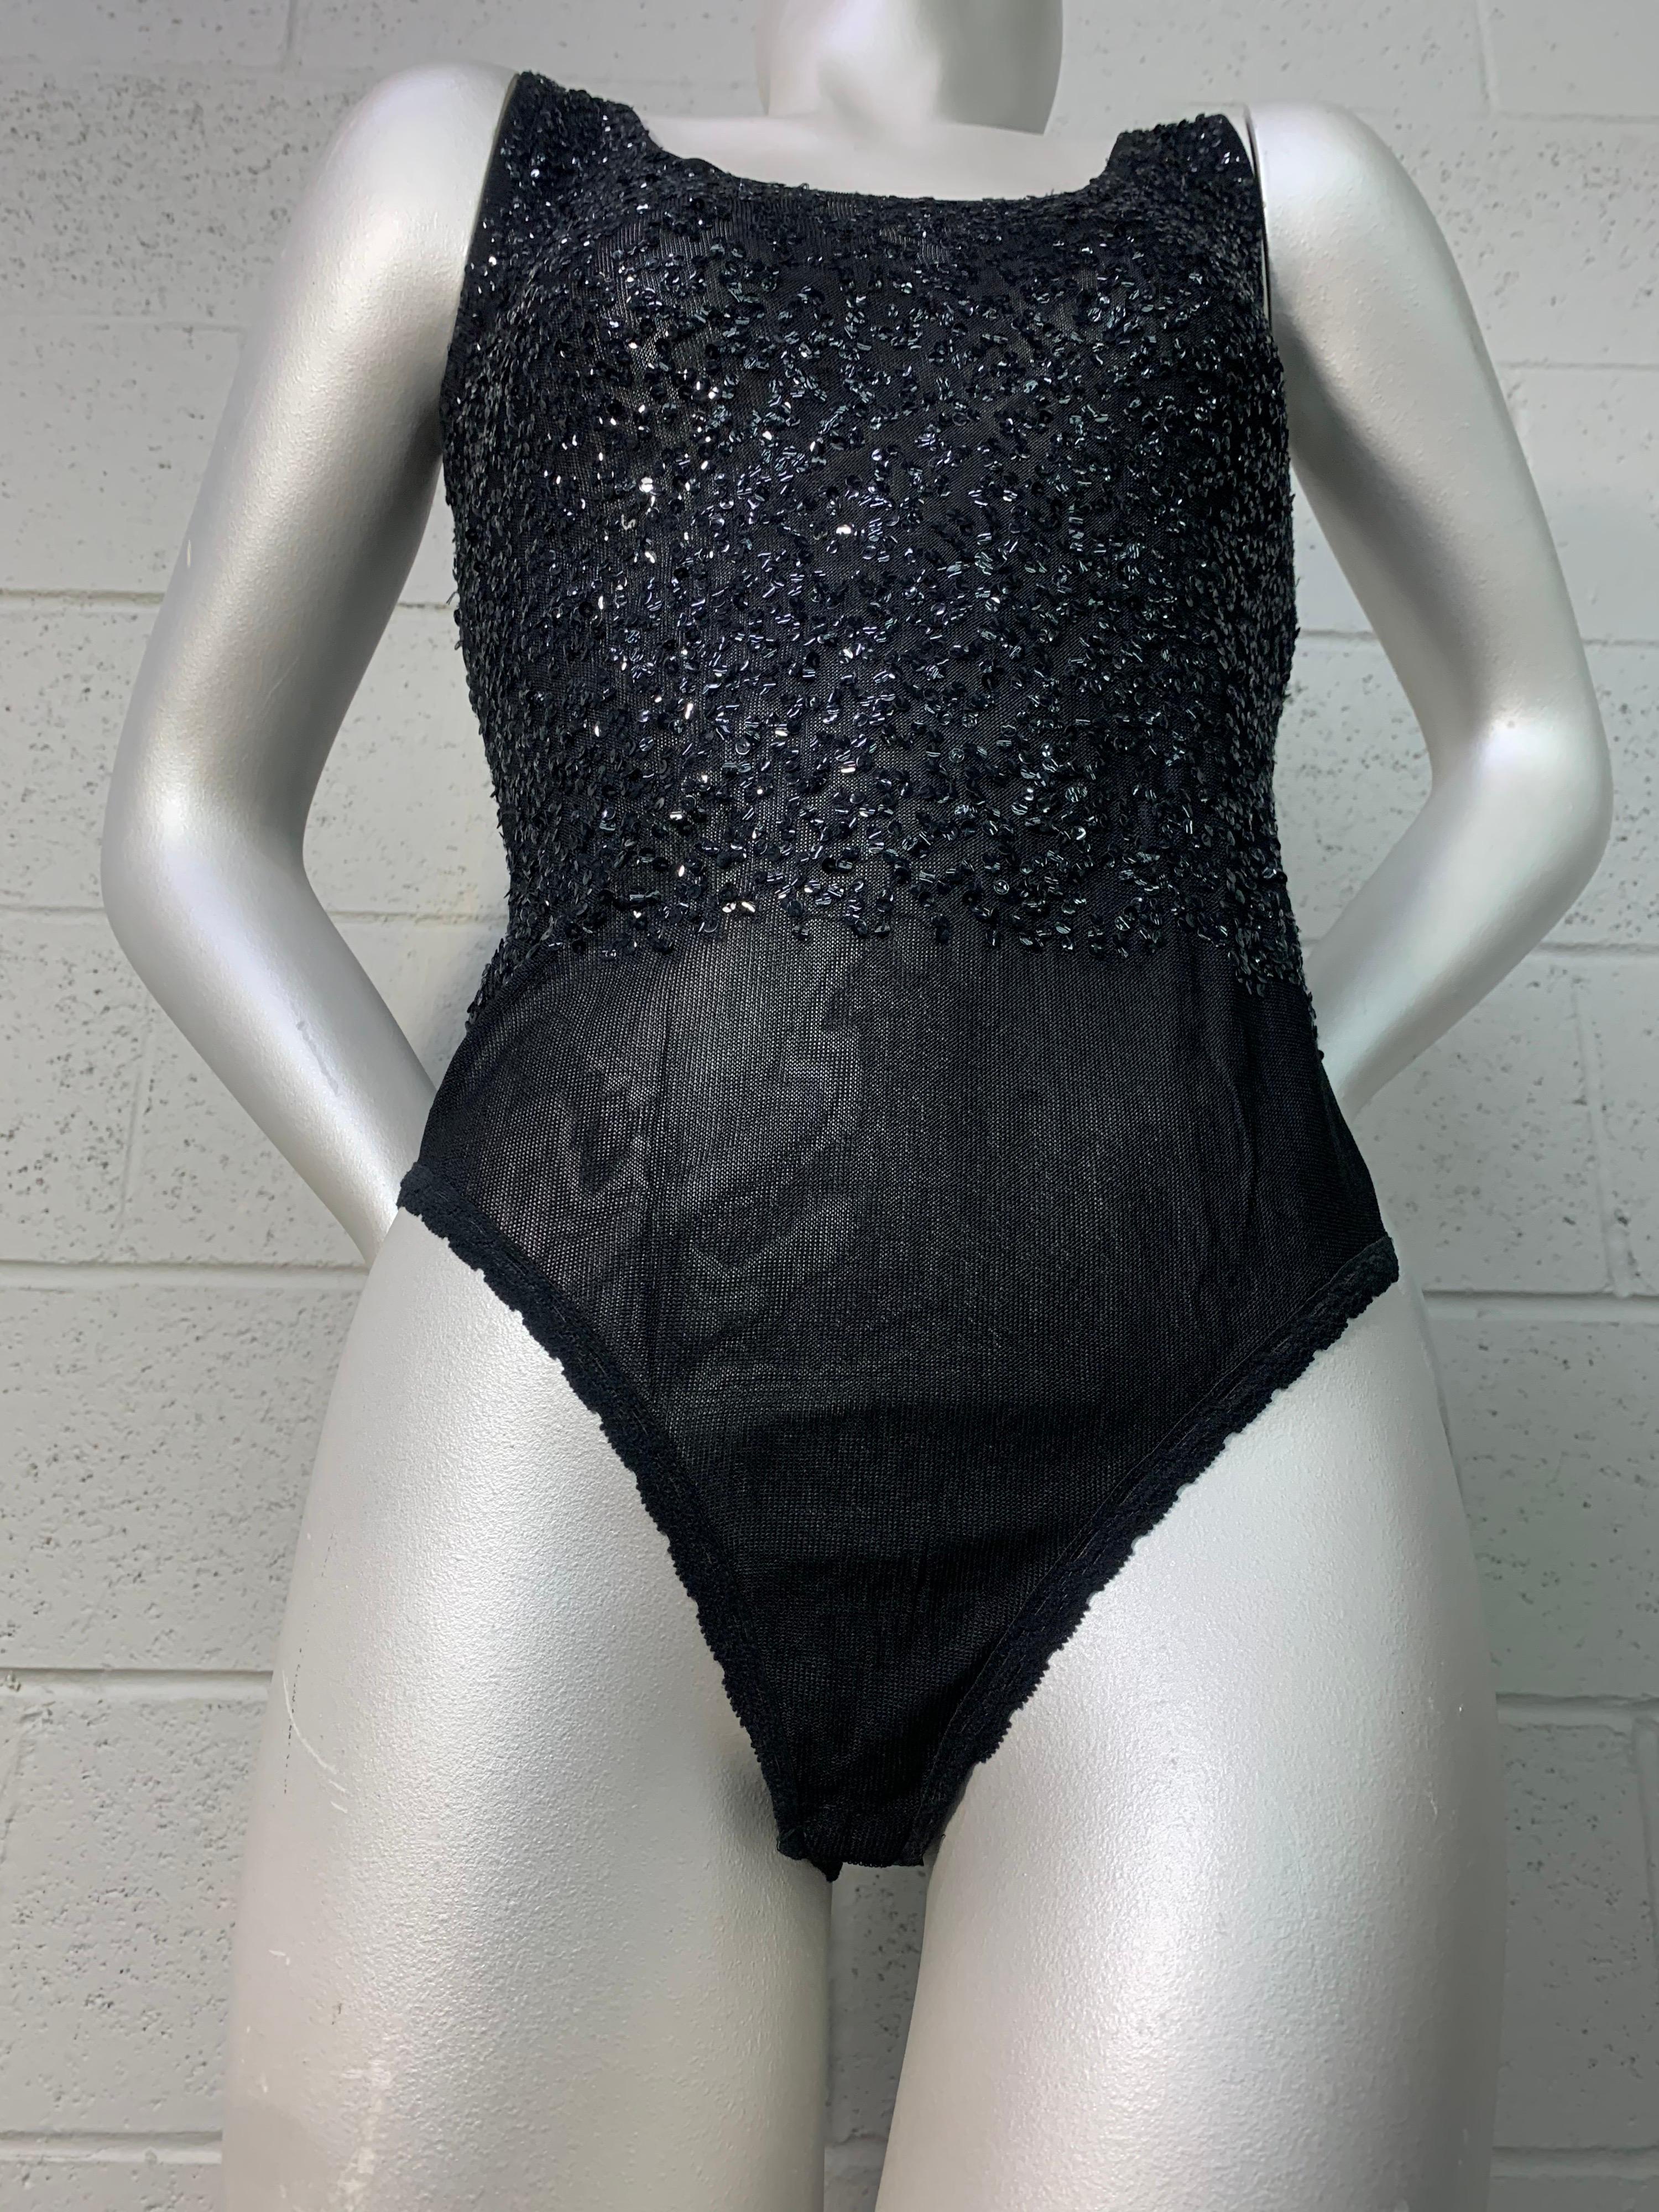 Ein sexy Donna Karan Body aus den 1990er Jahren mit schwarzem Paillettenbesatz auf dem gesamten Mieder. Holen Sie sich Ihre Glamazonen ins Haus! Druckknopfverschluss im Schritt. Größe Medium.